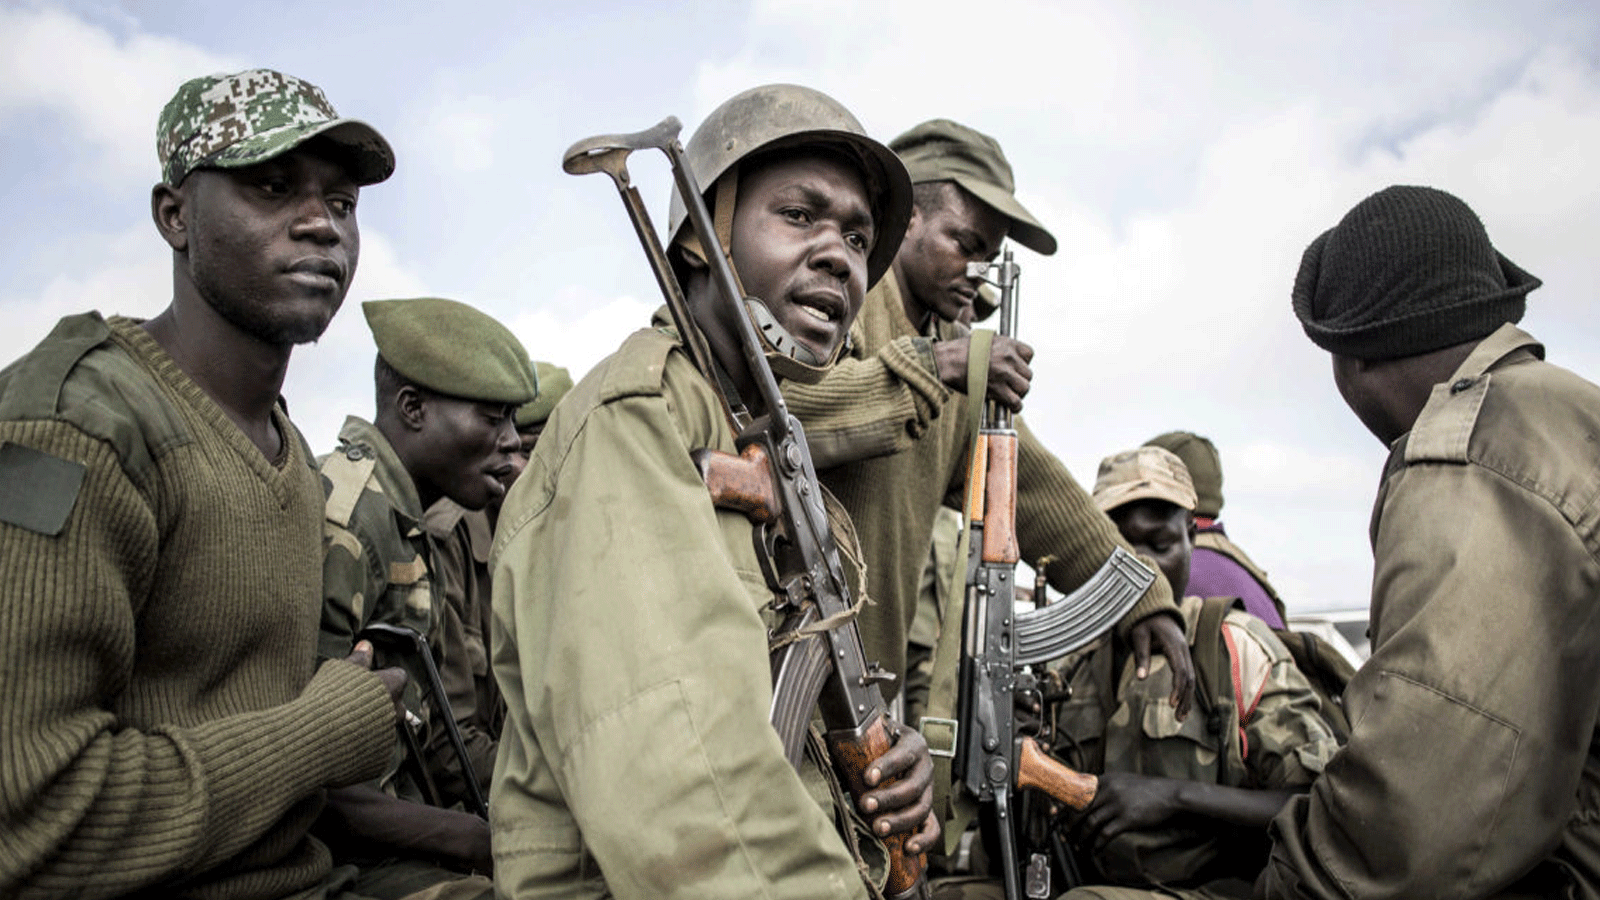 جنود من القوات المسلحة لجمهورية الكونغو الديمقراطية يستعدون لمرافقة العاملين الصحيين الملحقين ببرامج الاستجابة للإيبولا في 18 أيار\مايو 2019 في بوتيمبو، شمال كيفو.